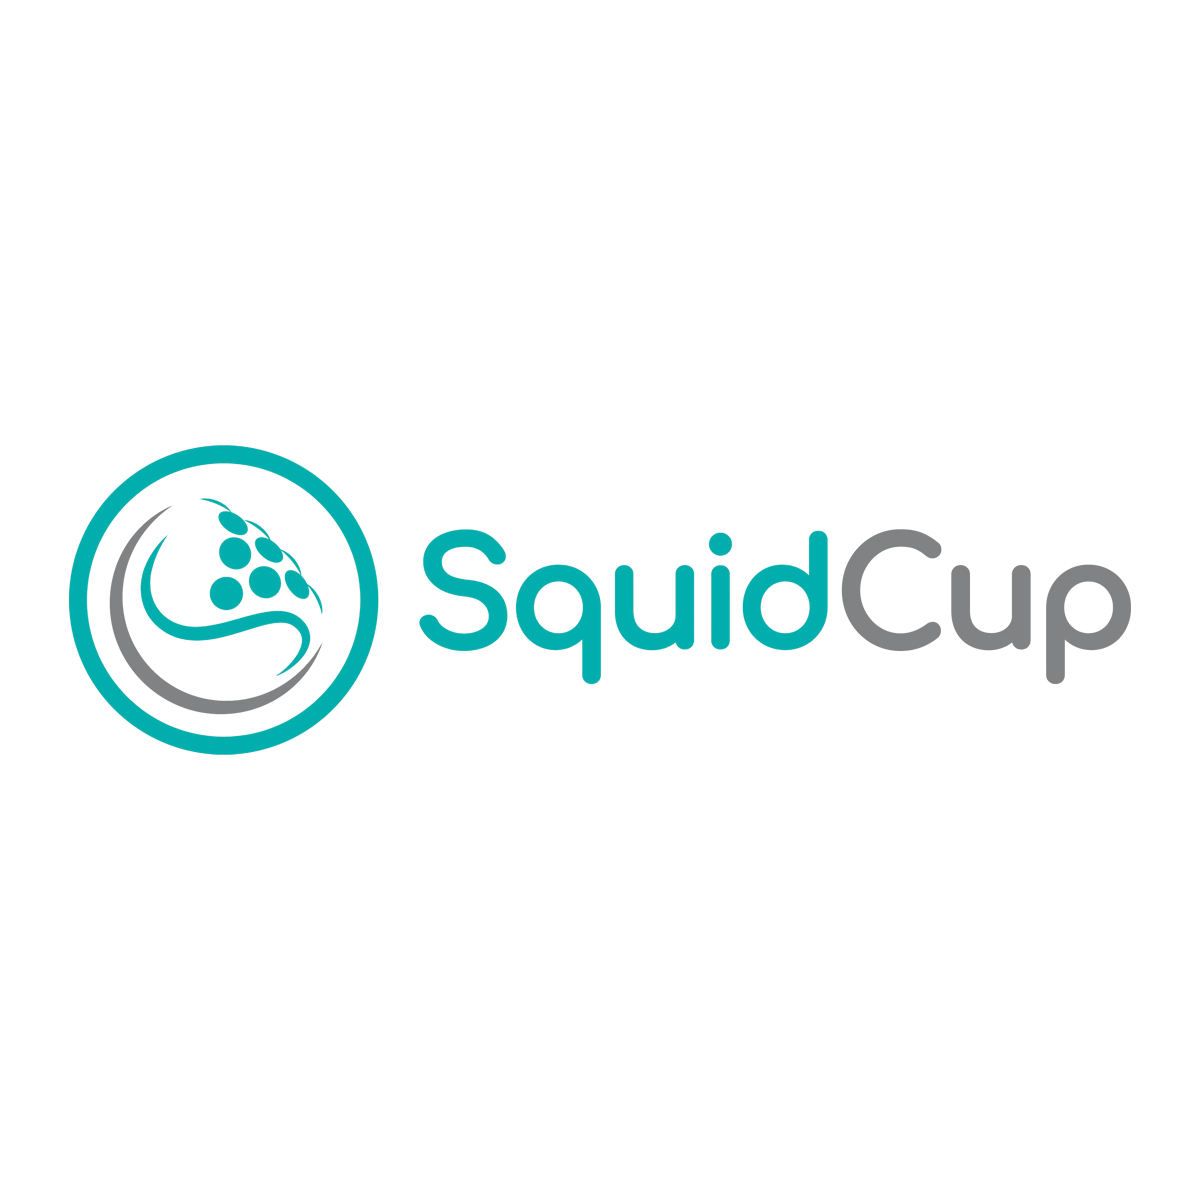 SquidCup